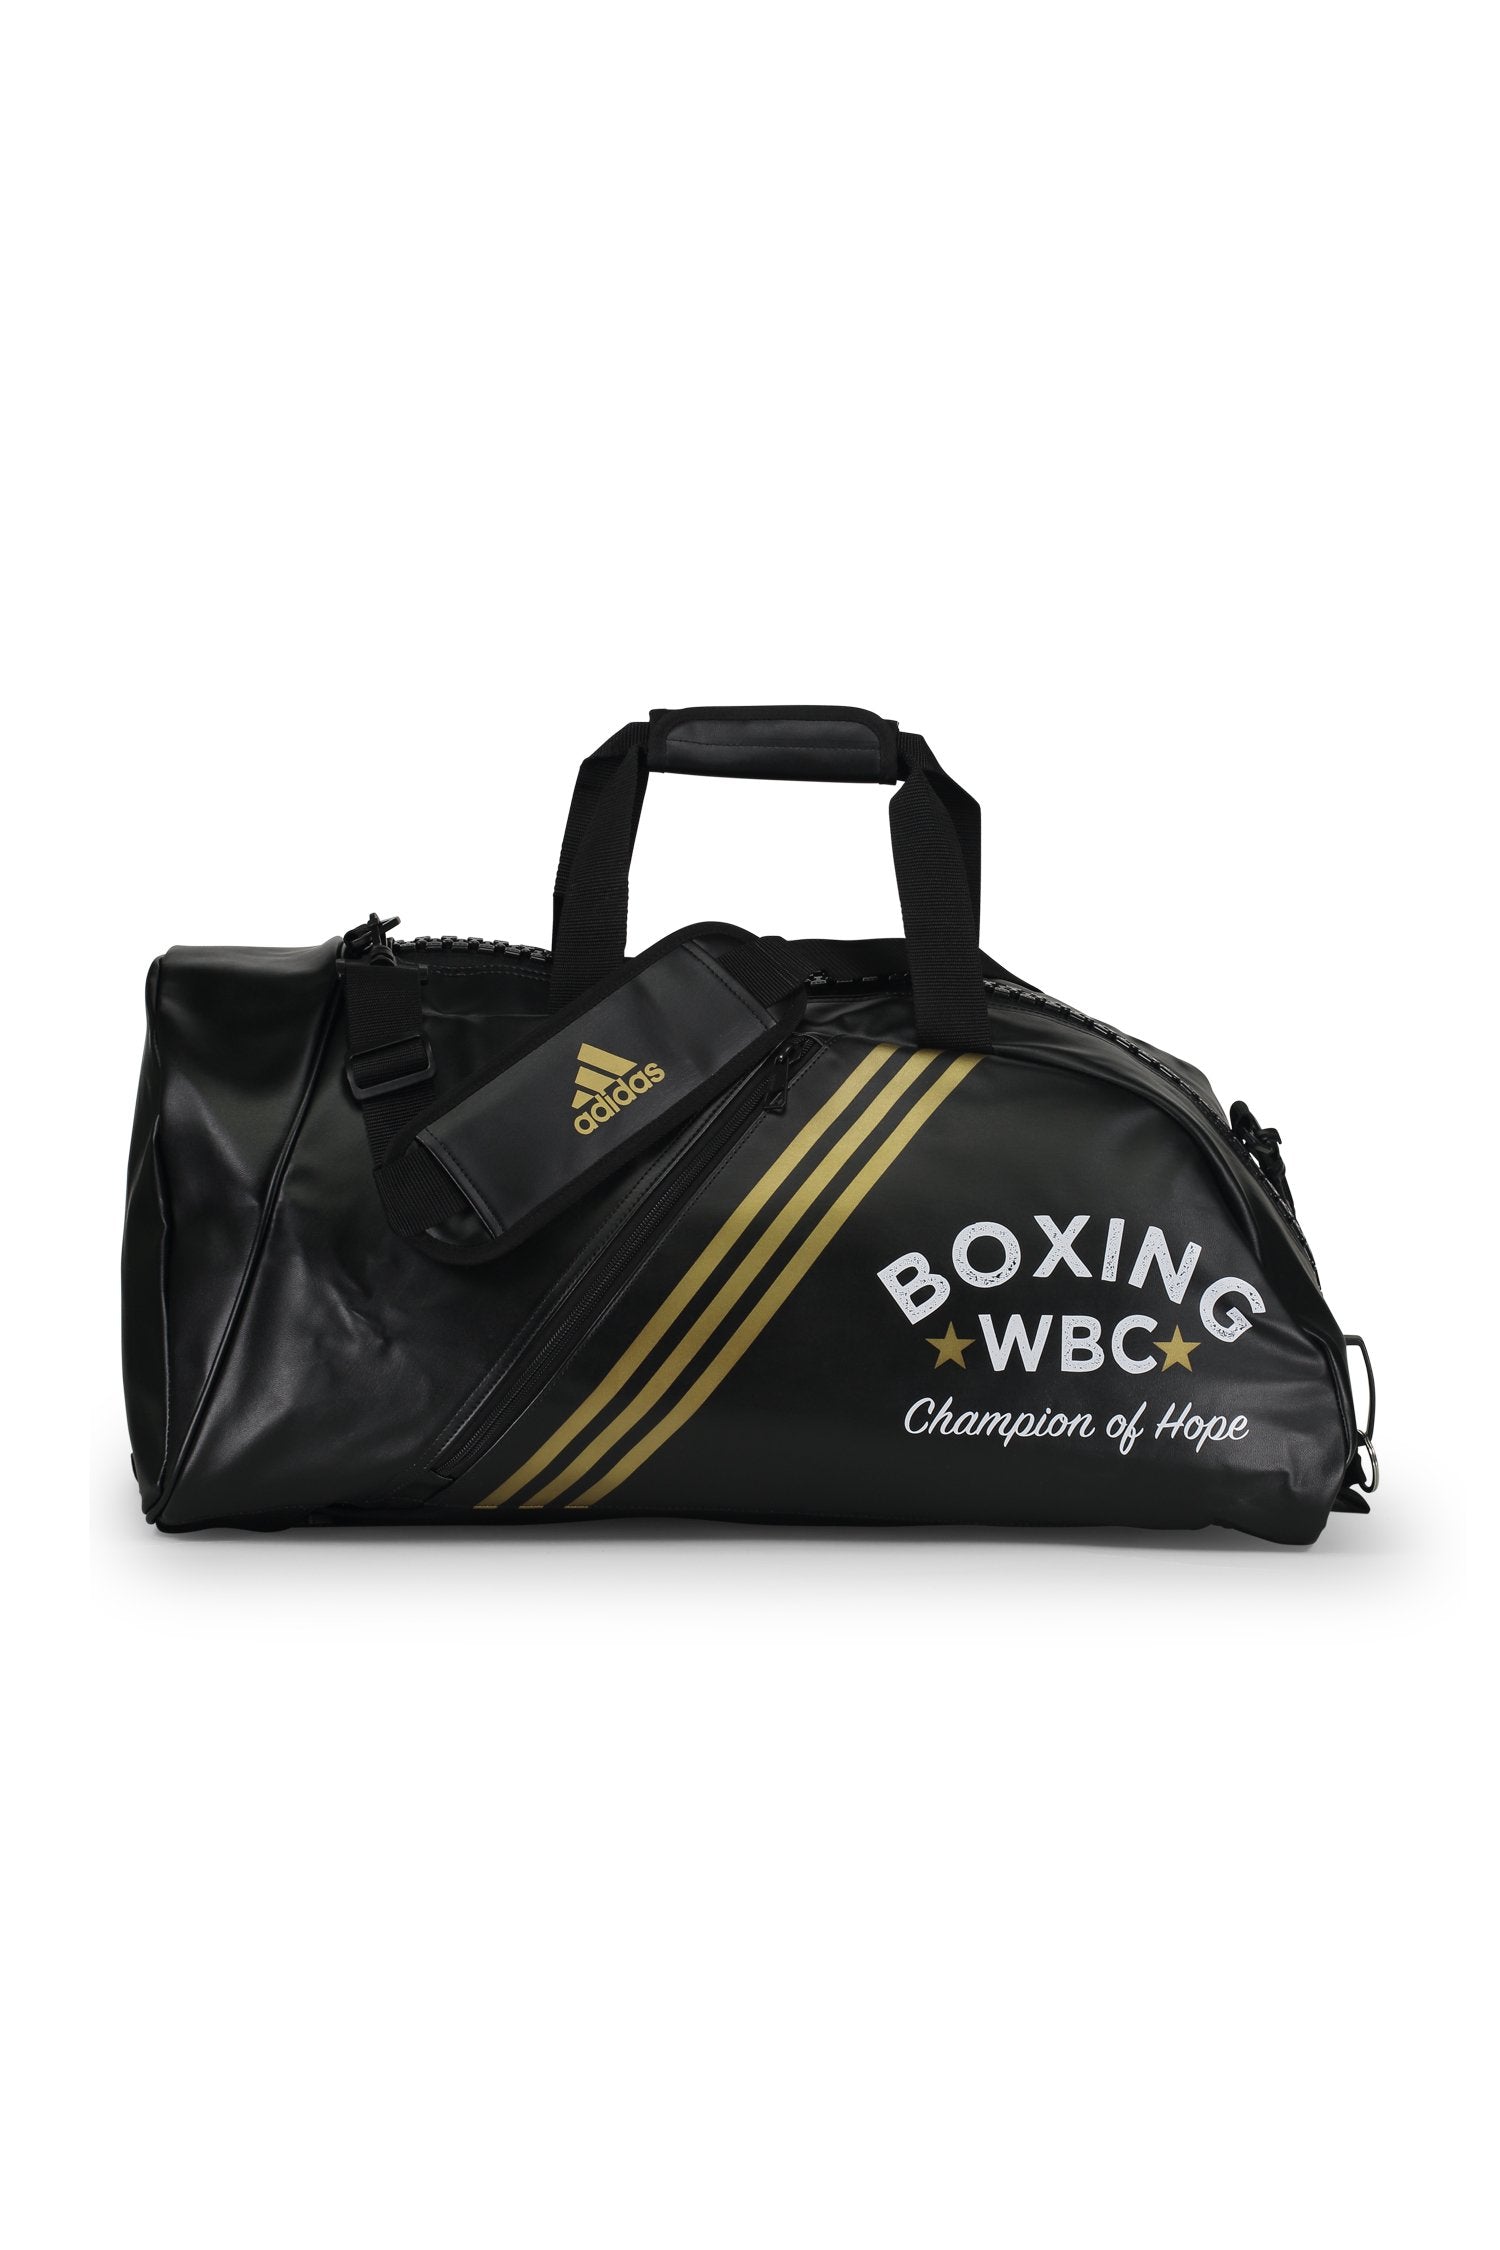 Adidas Bags Medium / Black WBC/Adidas Gym & Travel Bag